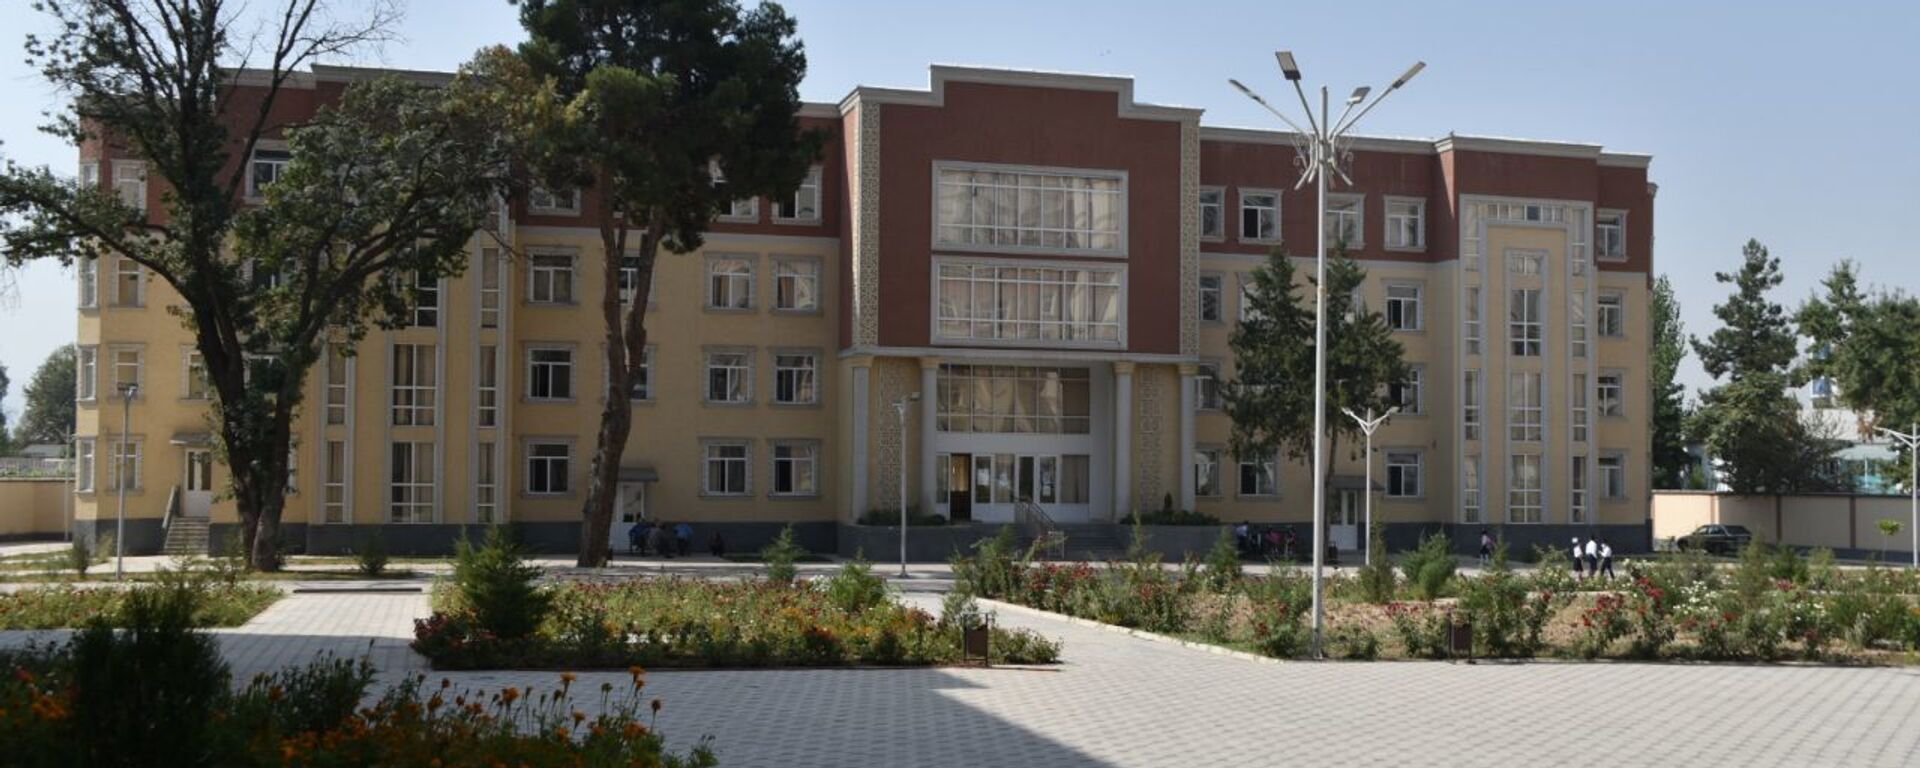 Школа - Sputnik Таджикистан, 1920, 19.05.2021